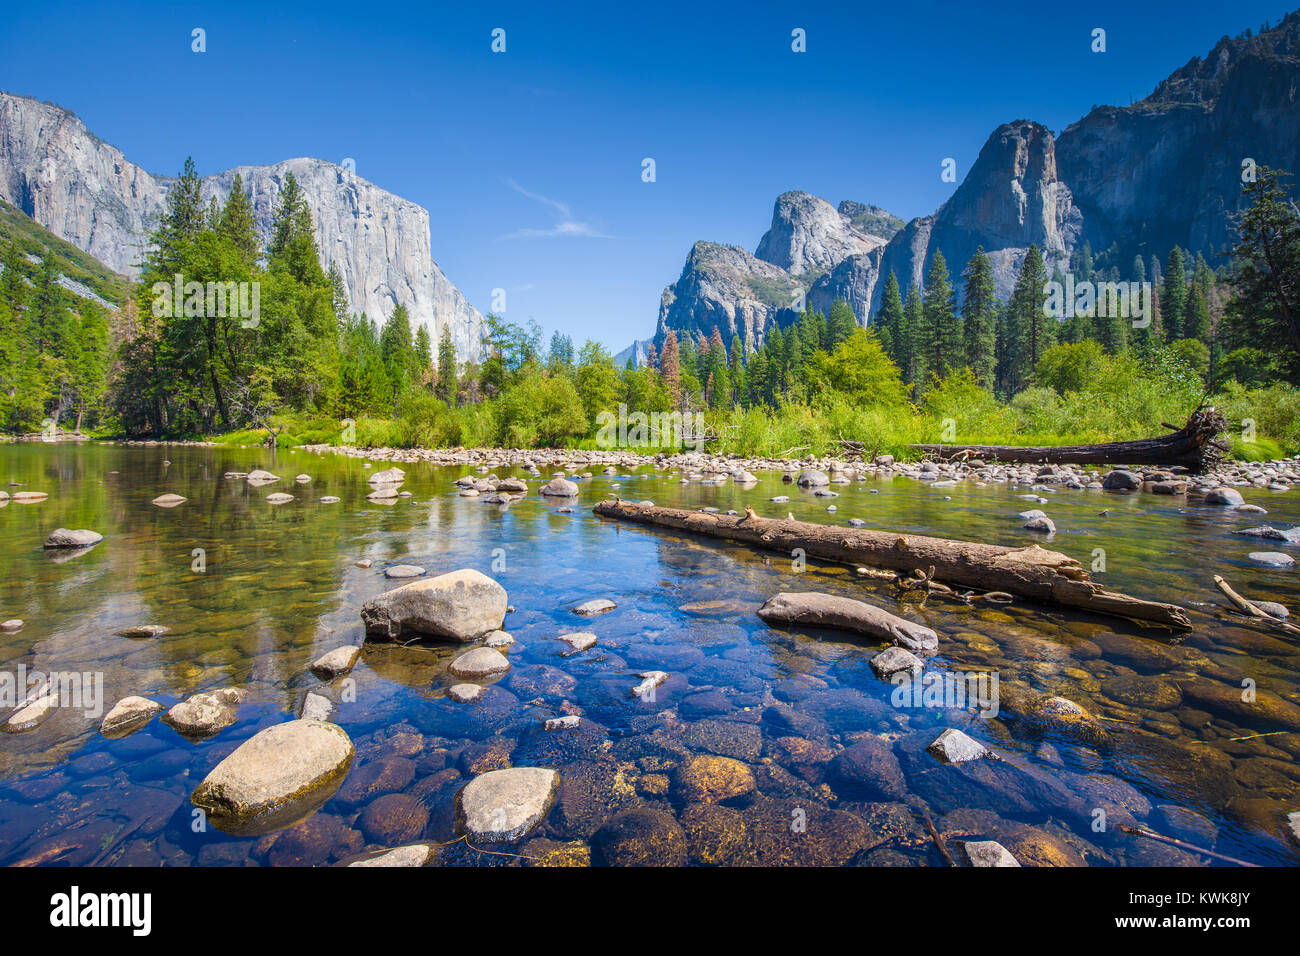 Vista clásica del pintoresco valle de Yosemite con Capitan de carril elevado famoso escalada cumbre y idílico río Merced en un día soleado de verano, California, EE.UU. Foto de stock